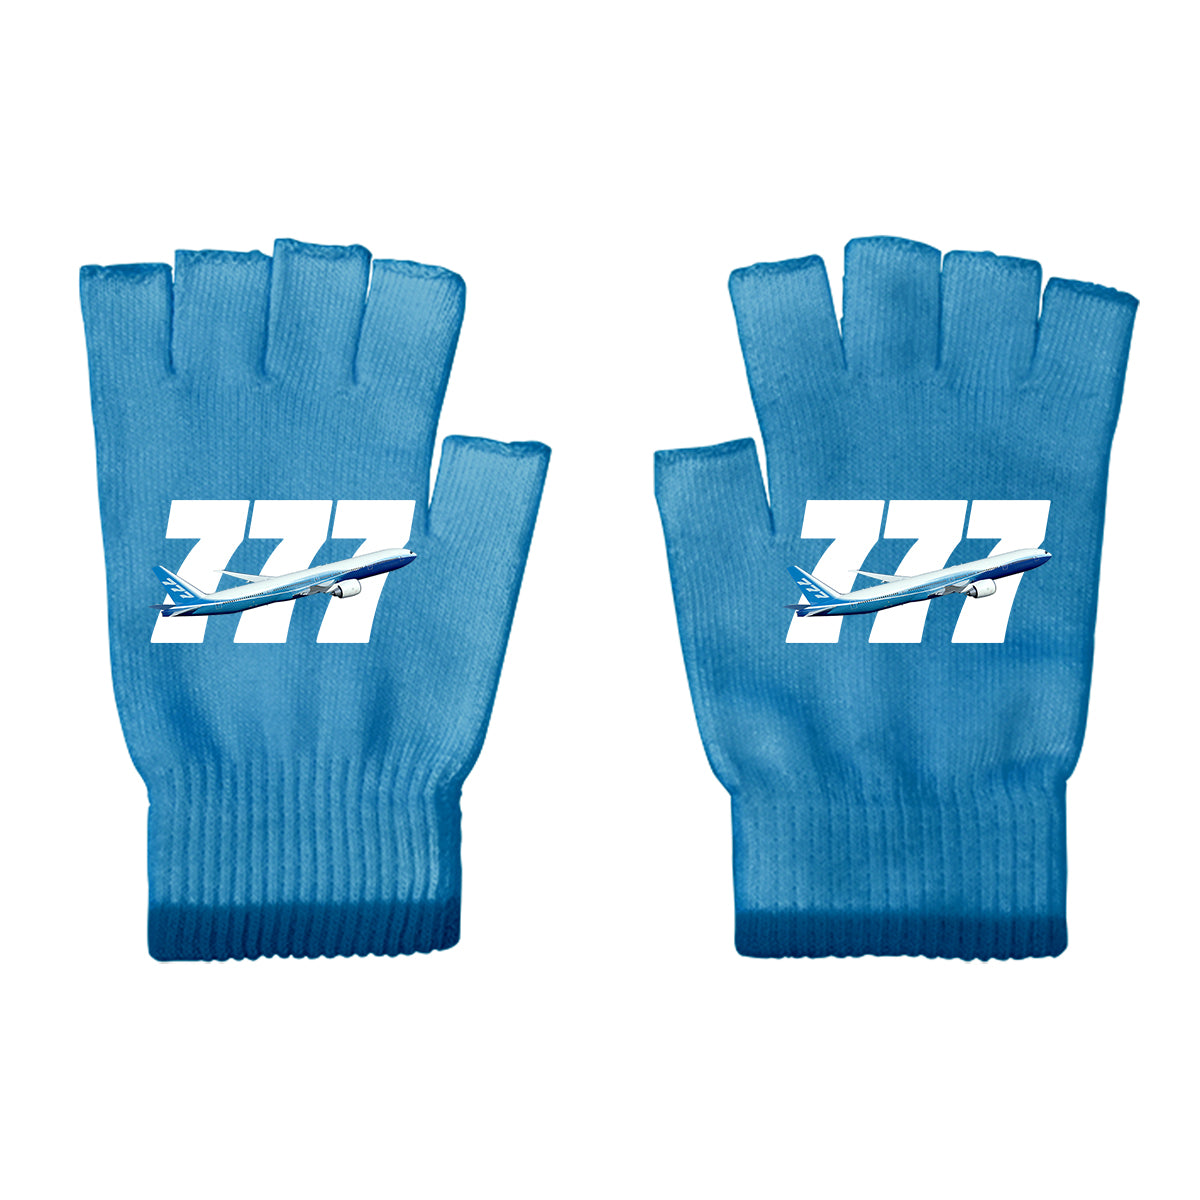 Super Boeing 777 Designed Cut Gloves